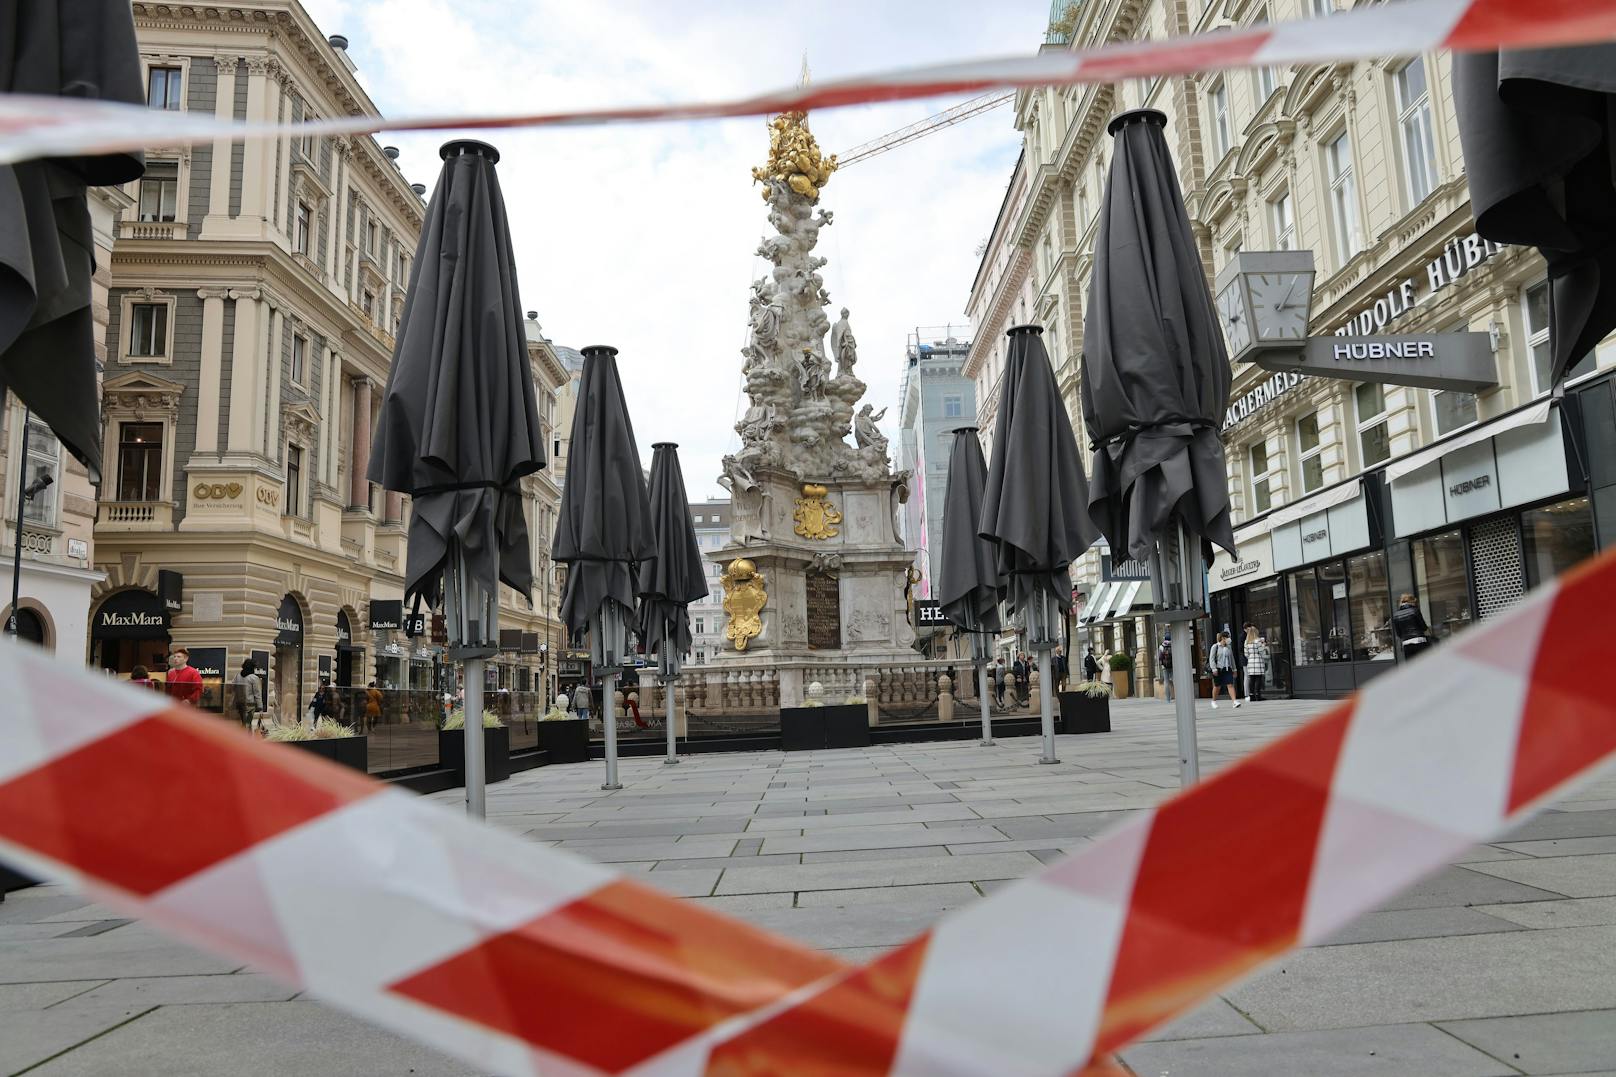 Stadt Wien im Corona-Lockdown im Herbst 2020. Bald könnten ähnliche Szenen blühen. (Symbolbild) <br>